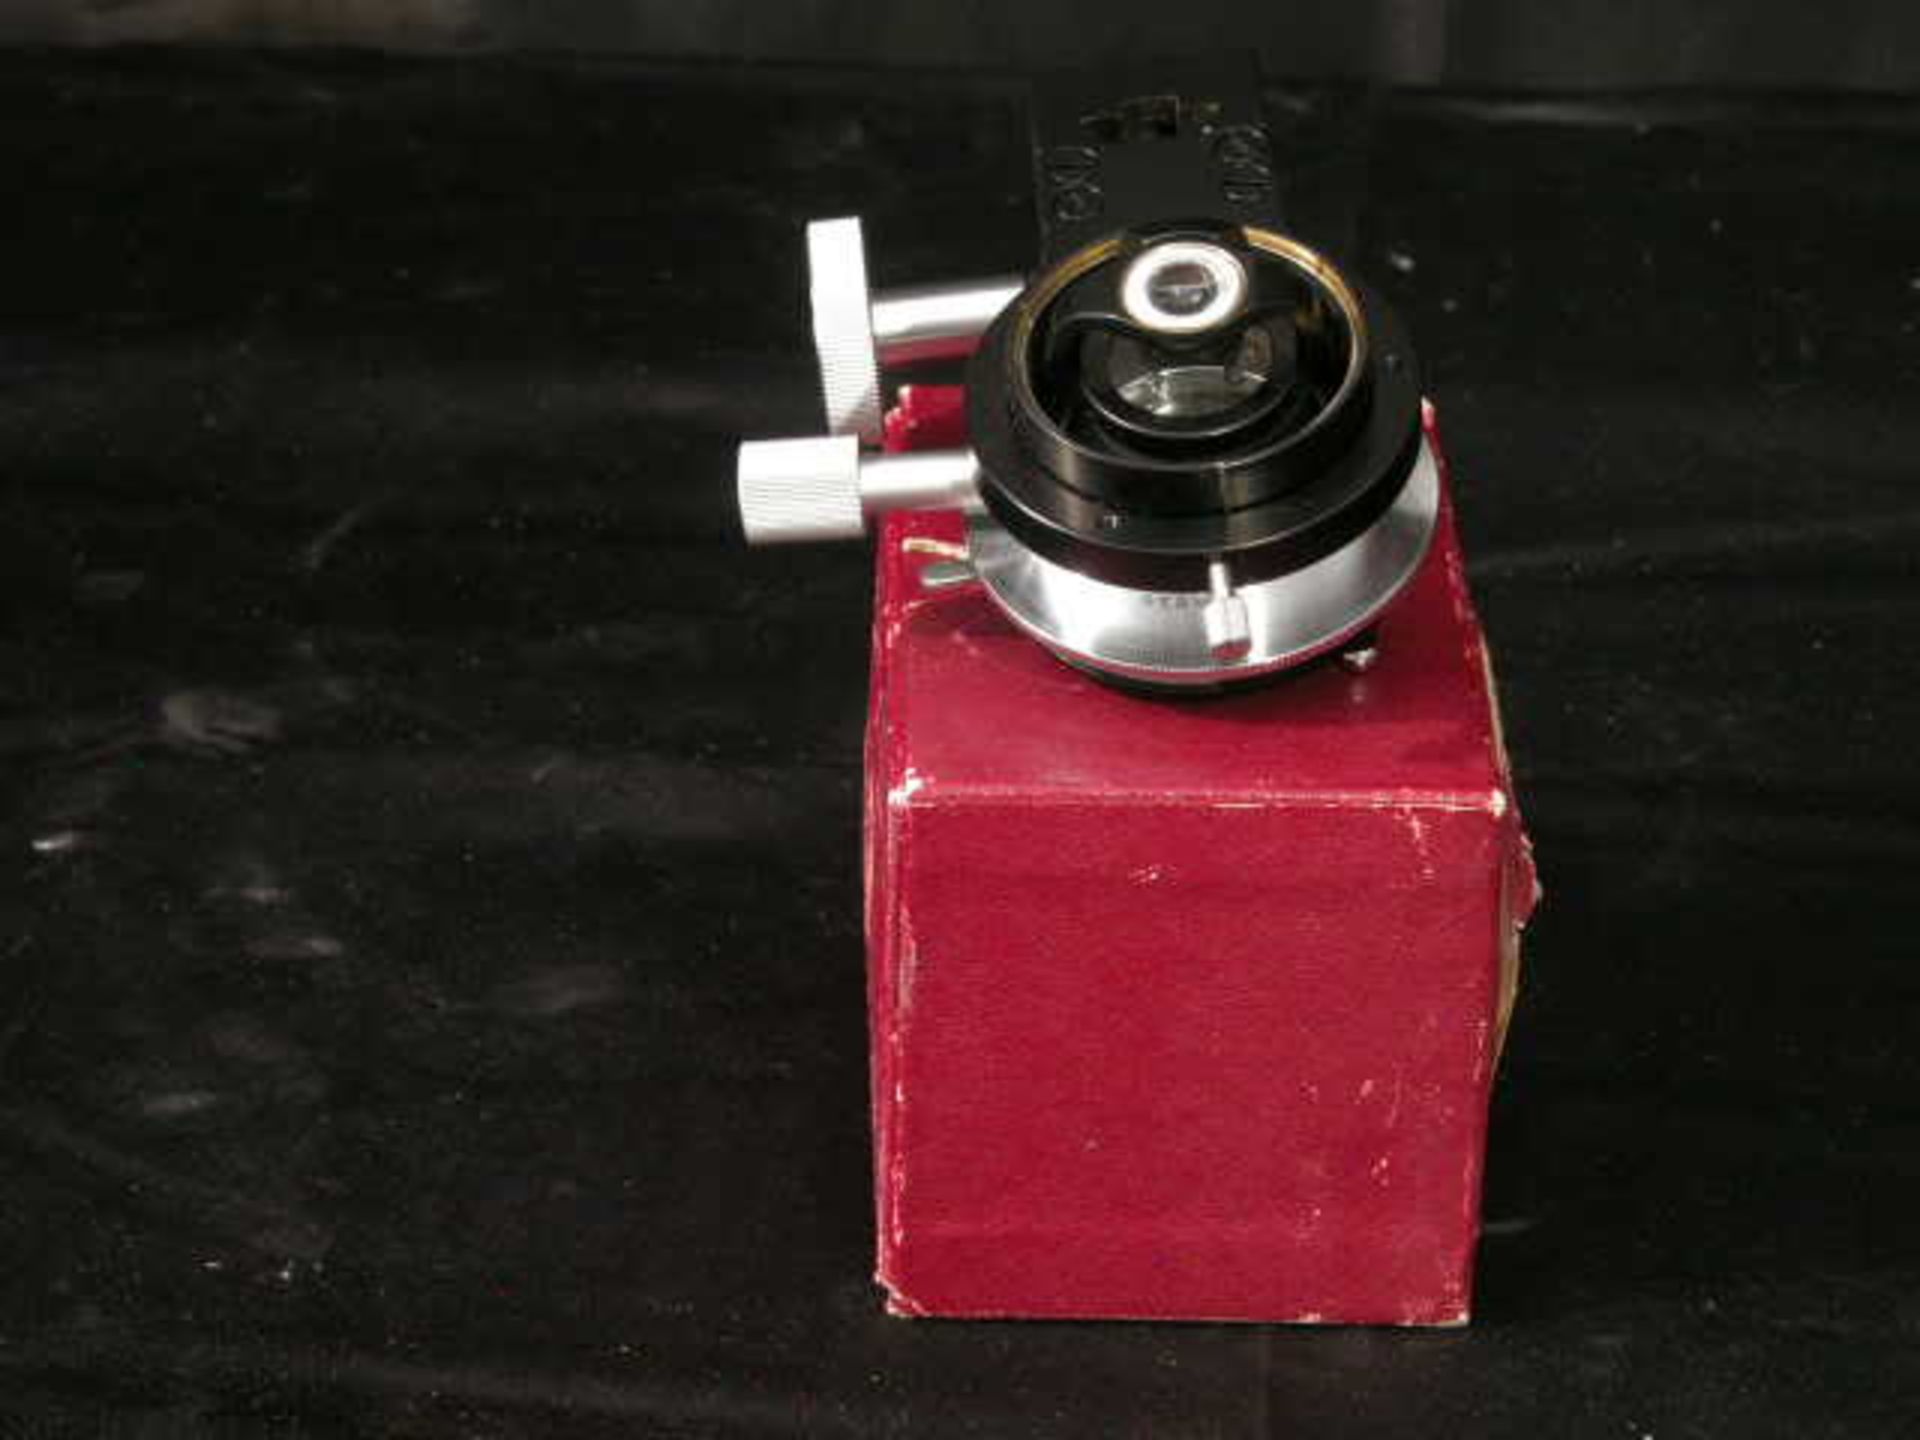 Ernst Leitz Wetzlar Low Power Microscope Condenser, Qty 1, 323410830997 - Image 2 of 8